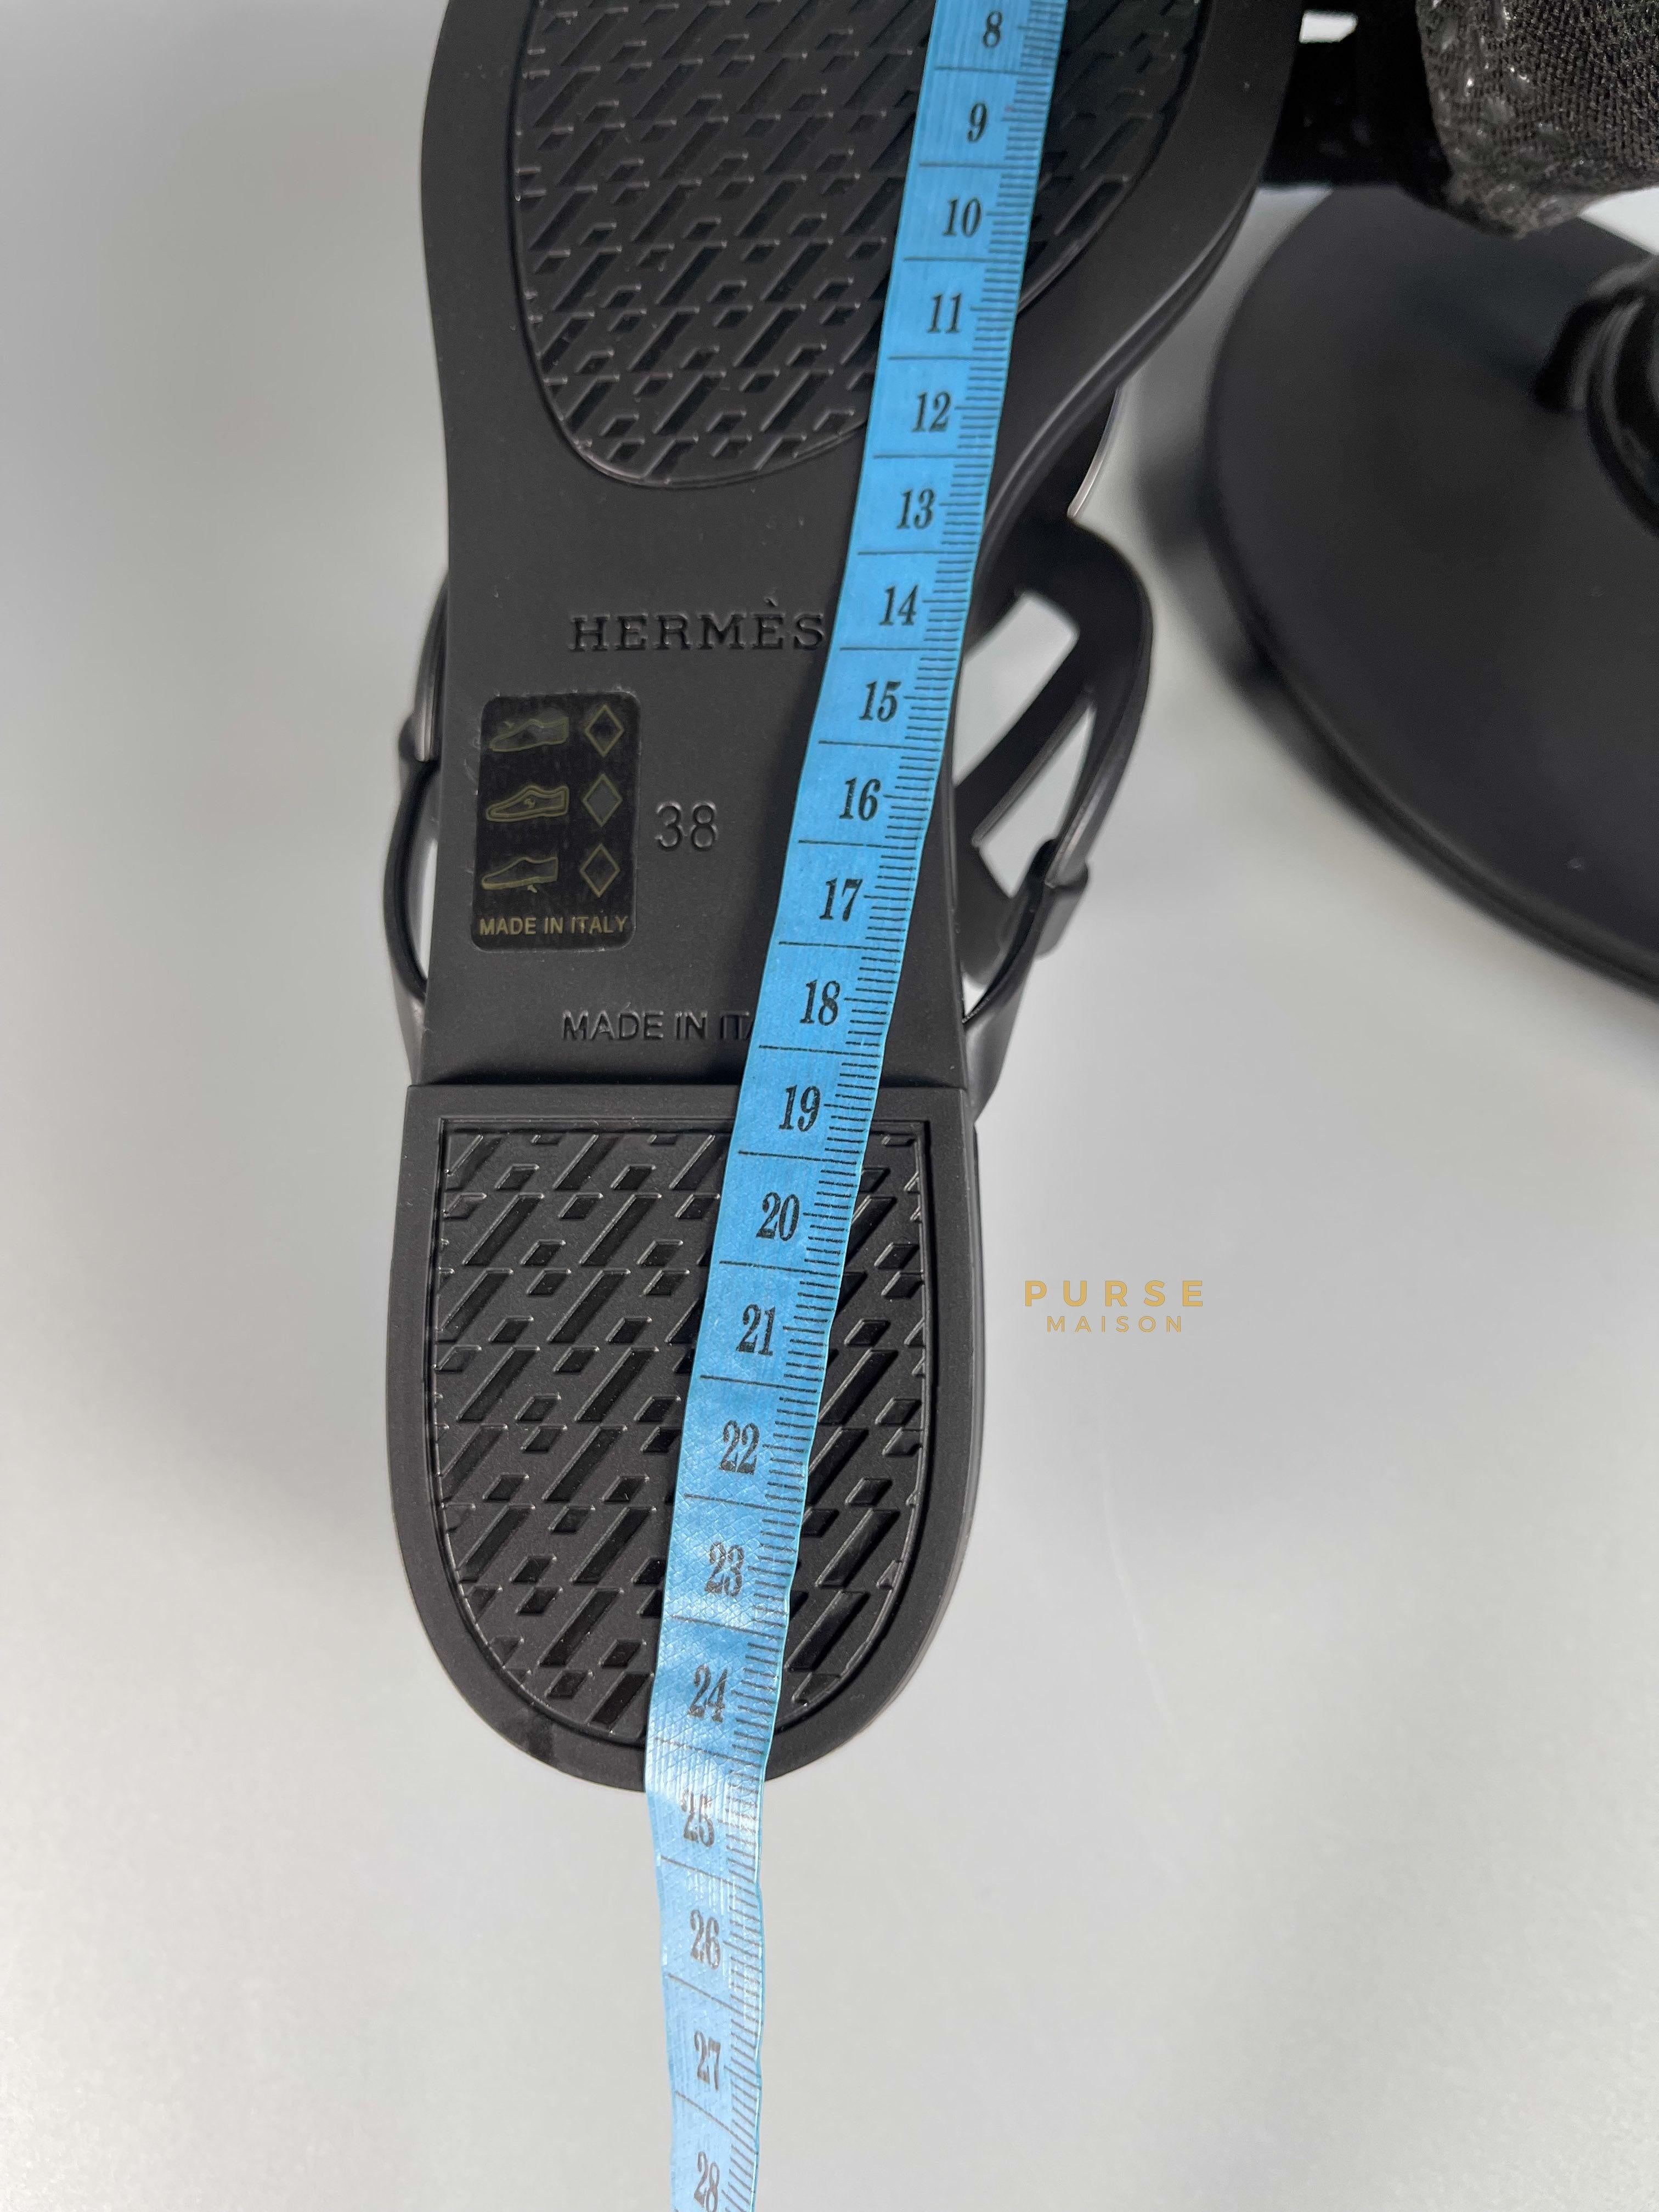 Hermes Egerie Black Sandals Size 38 EU (cm) | Purse Maison Luxury Bags Shop